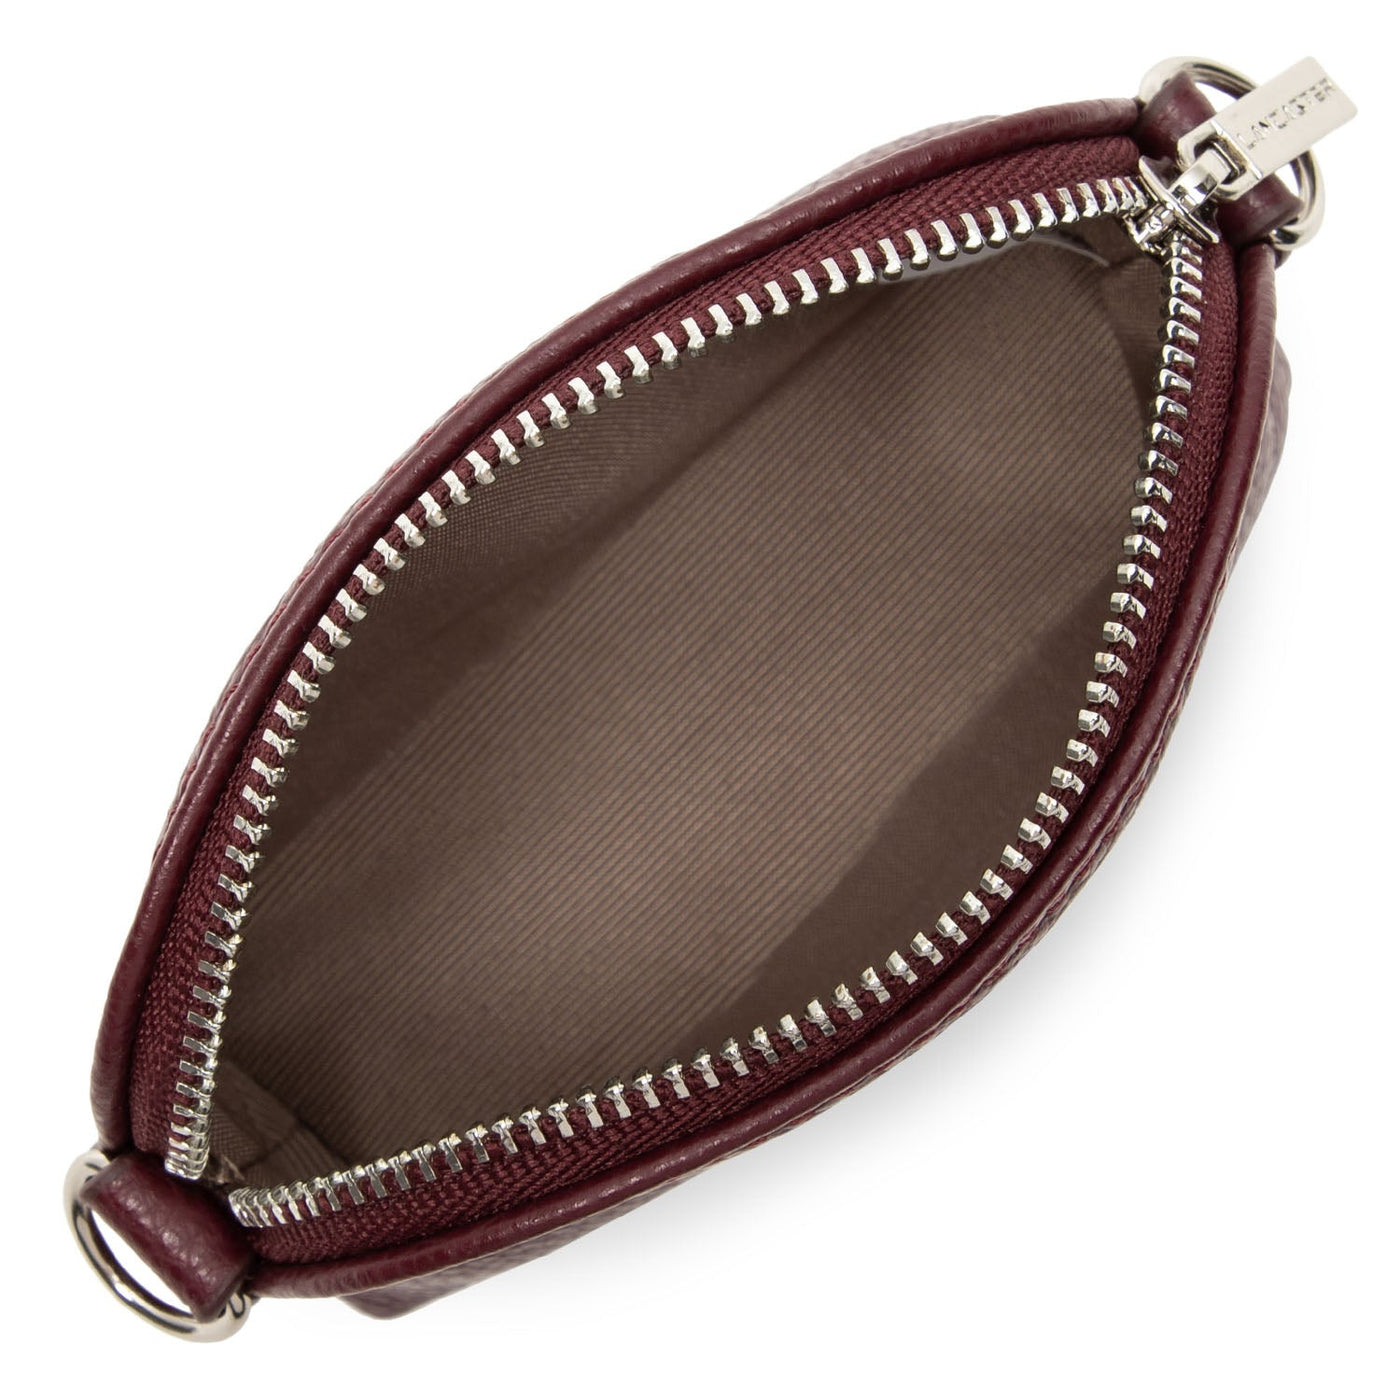 small coin purse - foulonné pm #couleur_pourpre